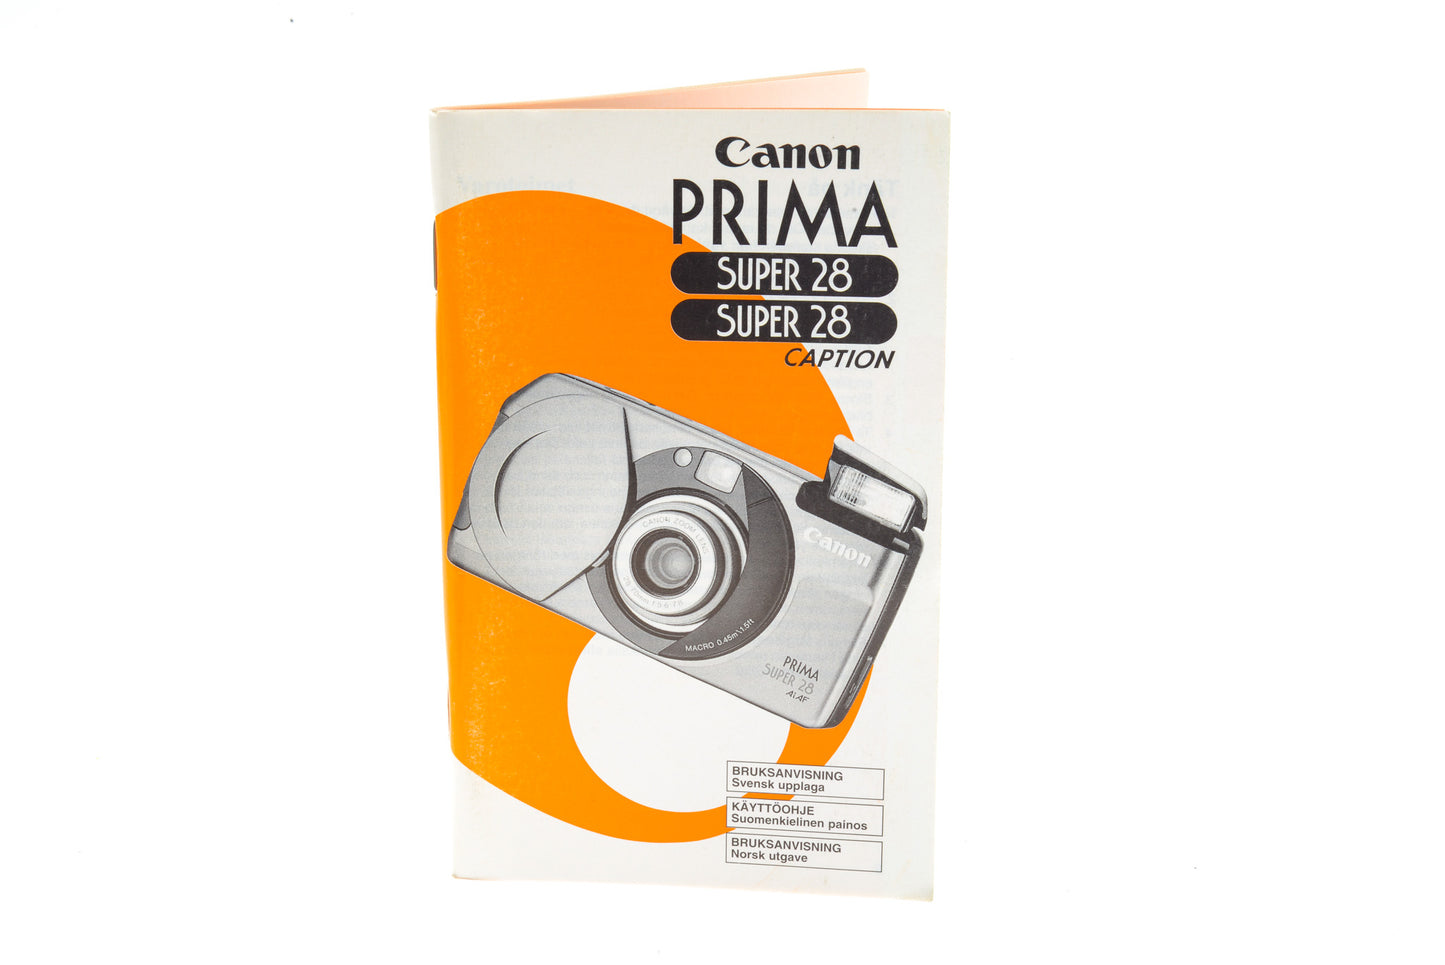 Canon Prima Super 28 Instructions